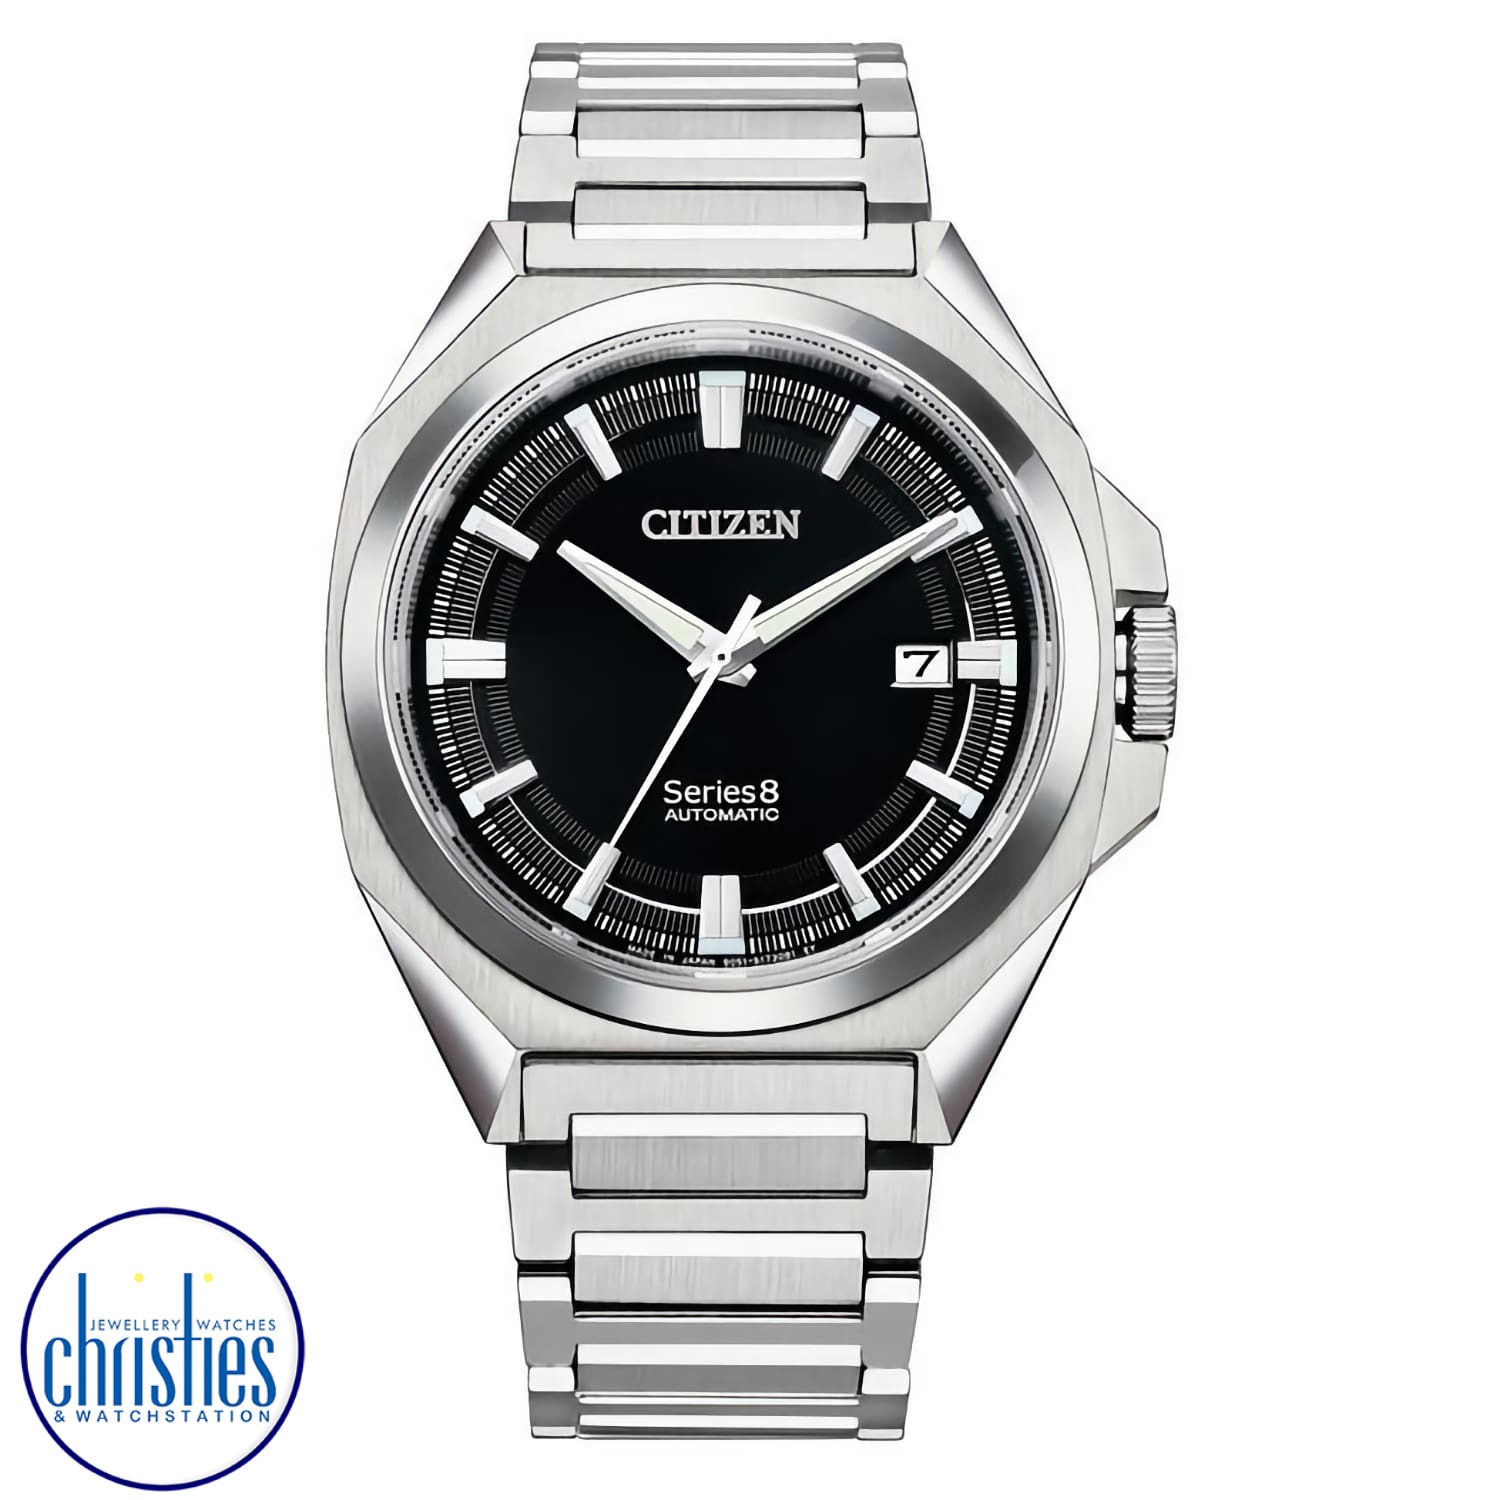 NB6010-81E CITIZEN Series 8 Automatic Watch.citizen nz